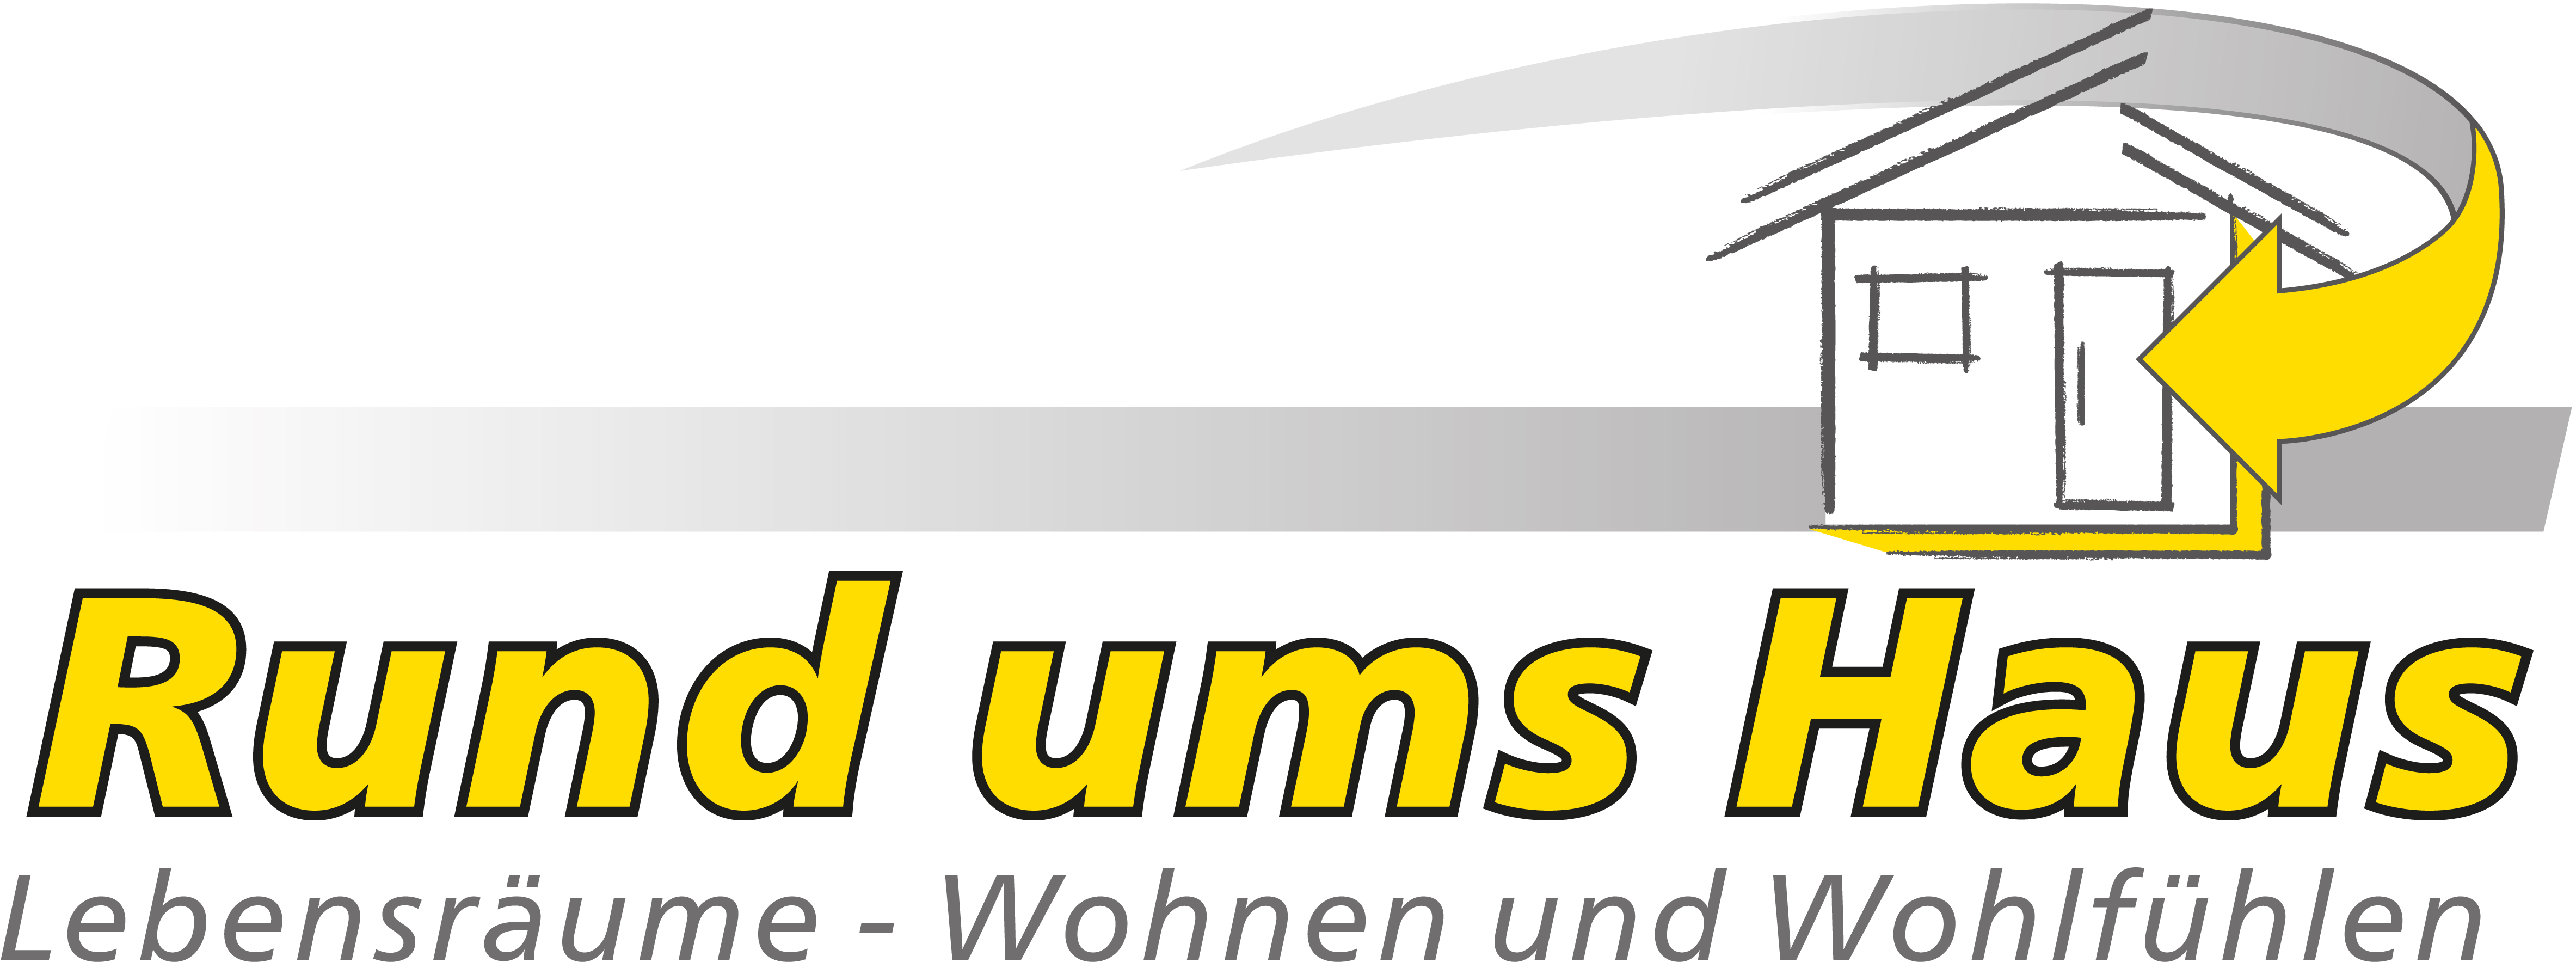 Rund ums Haus GmbH- Renovieren, Umbauen und Ausbauen in Bad Friedrichshall